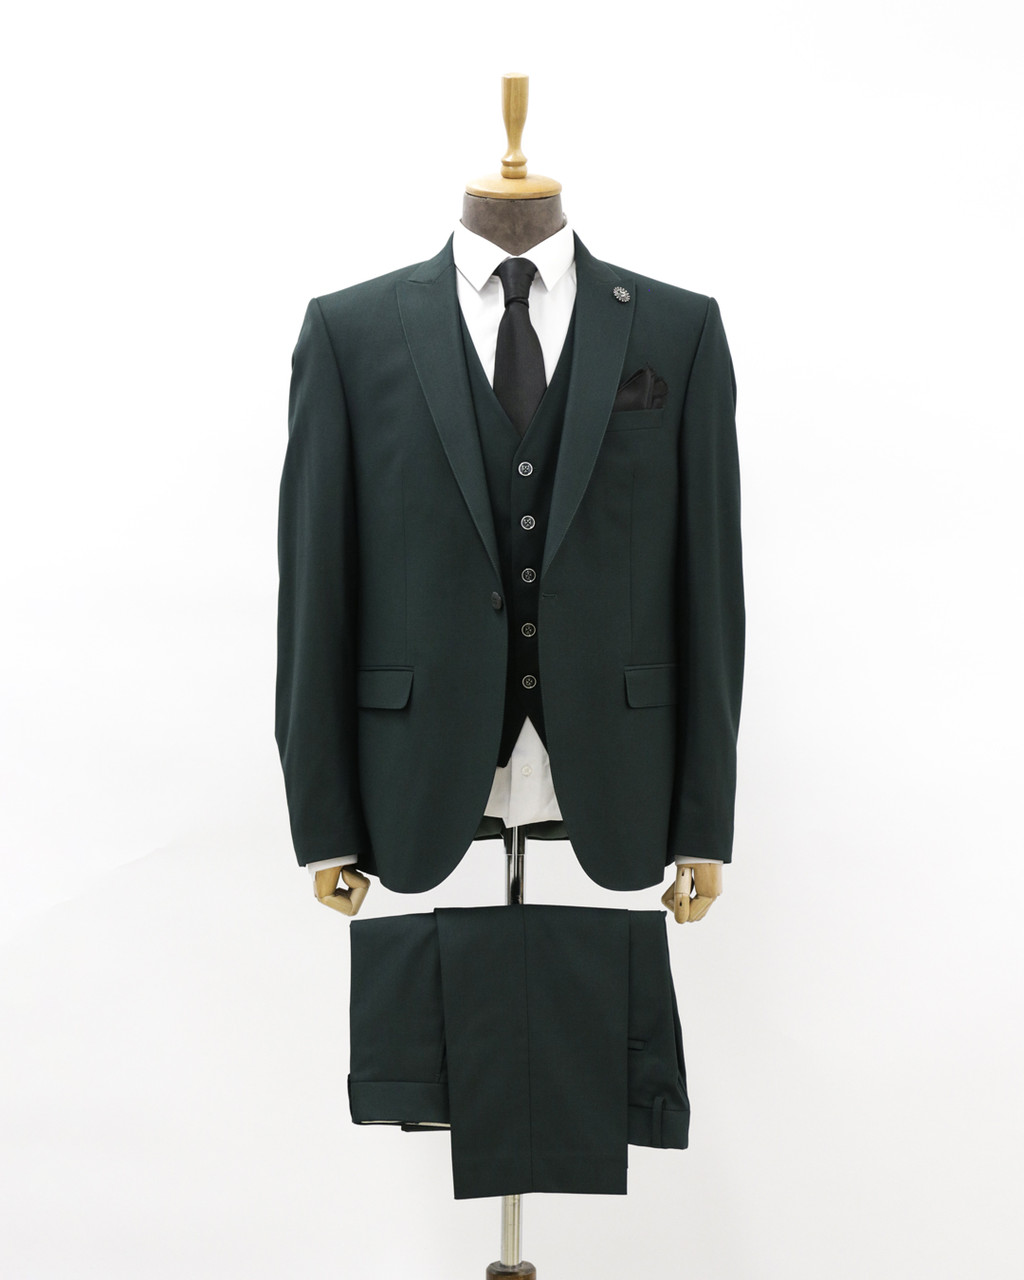 Мужской деловой костюм «UM&H 17254026» зеленый, фото 1